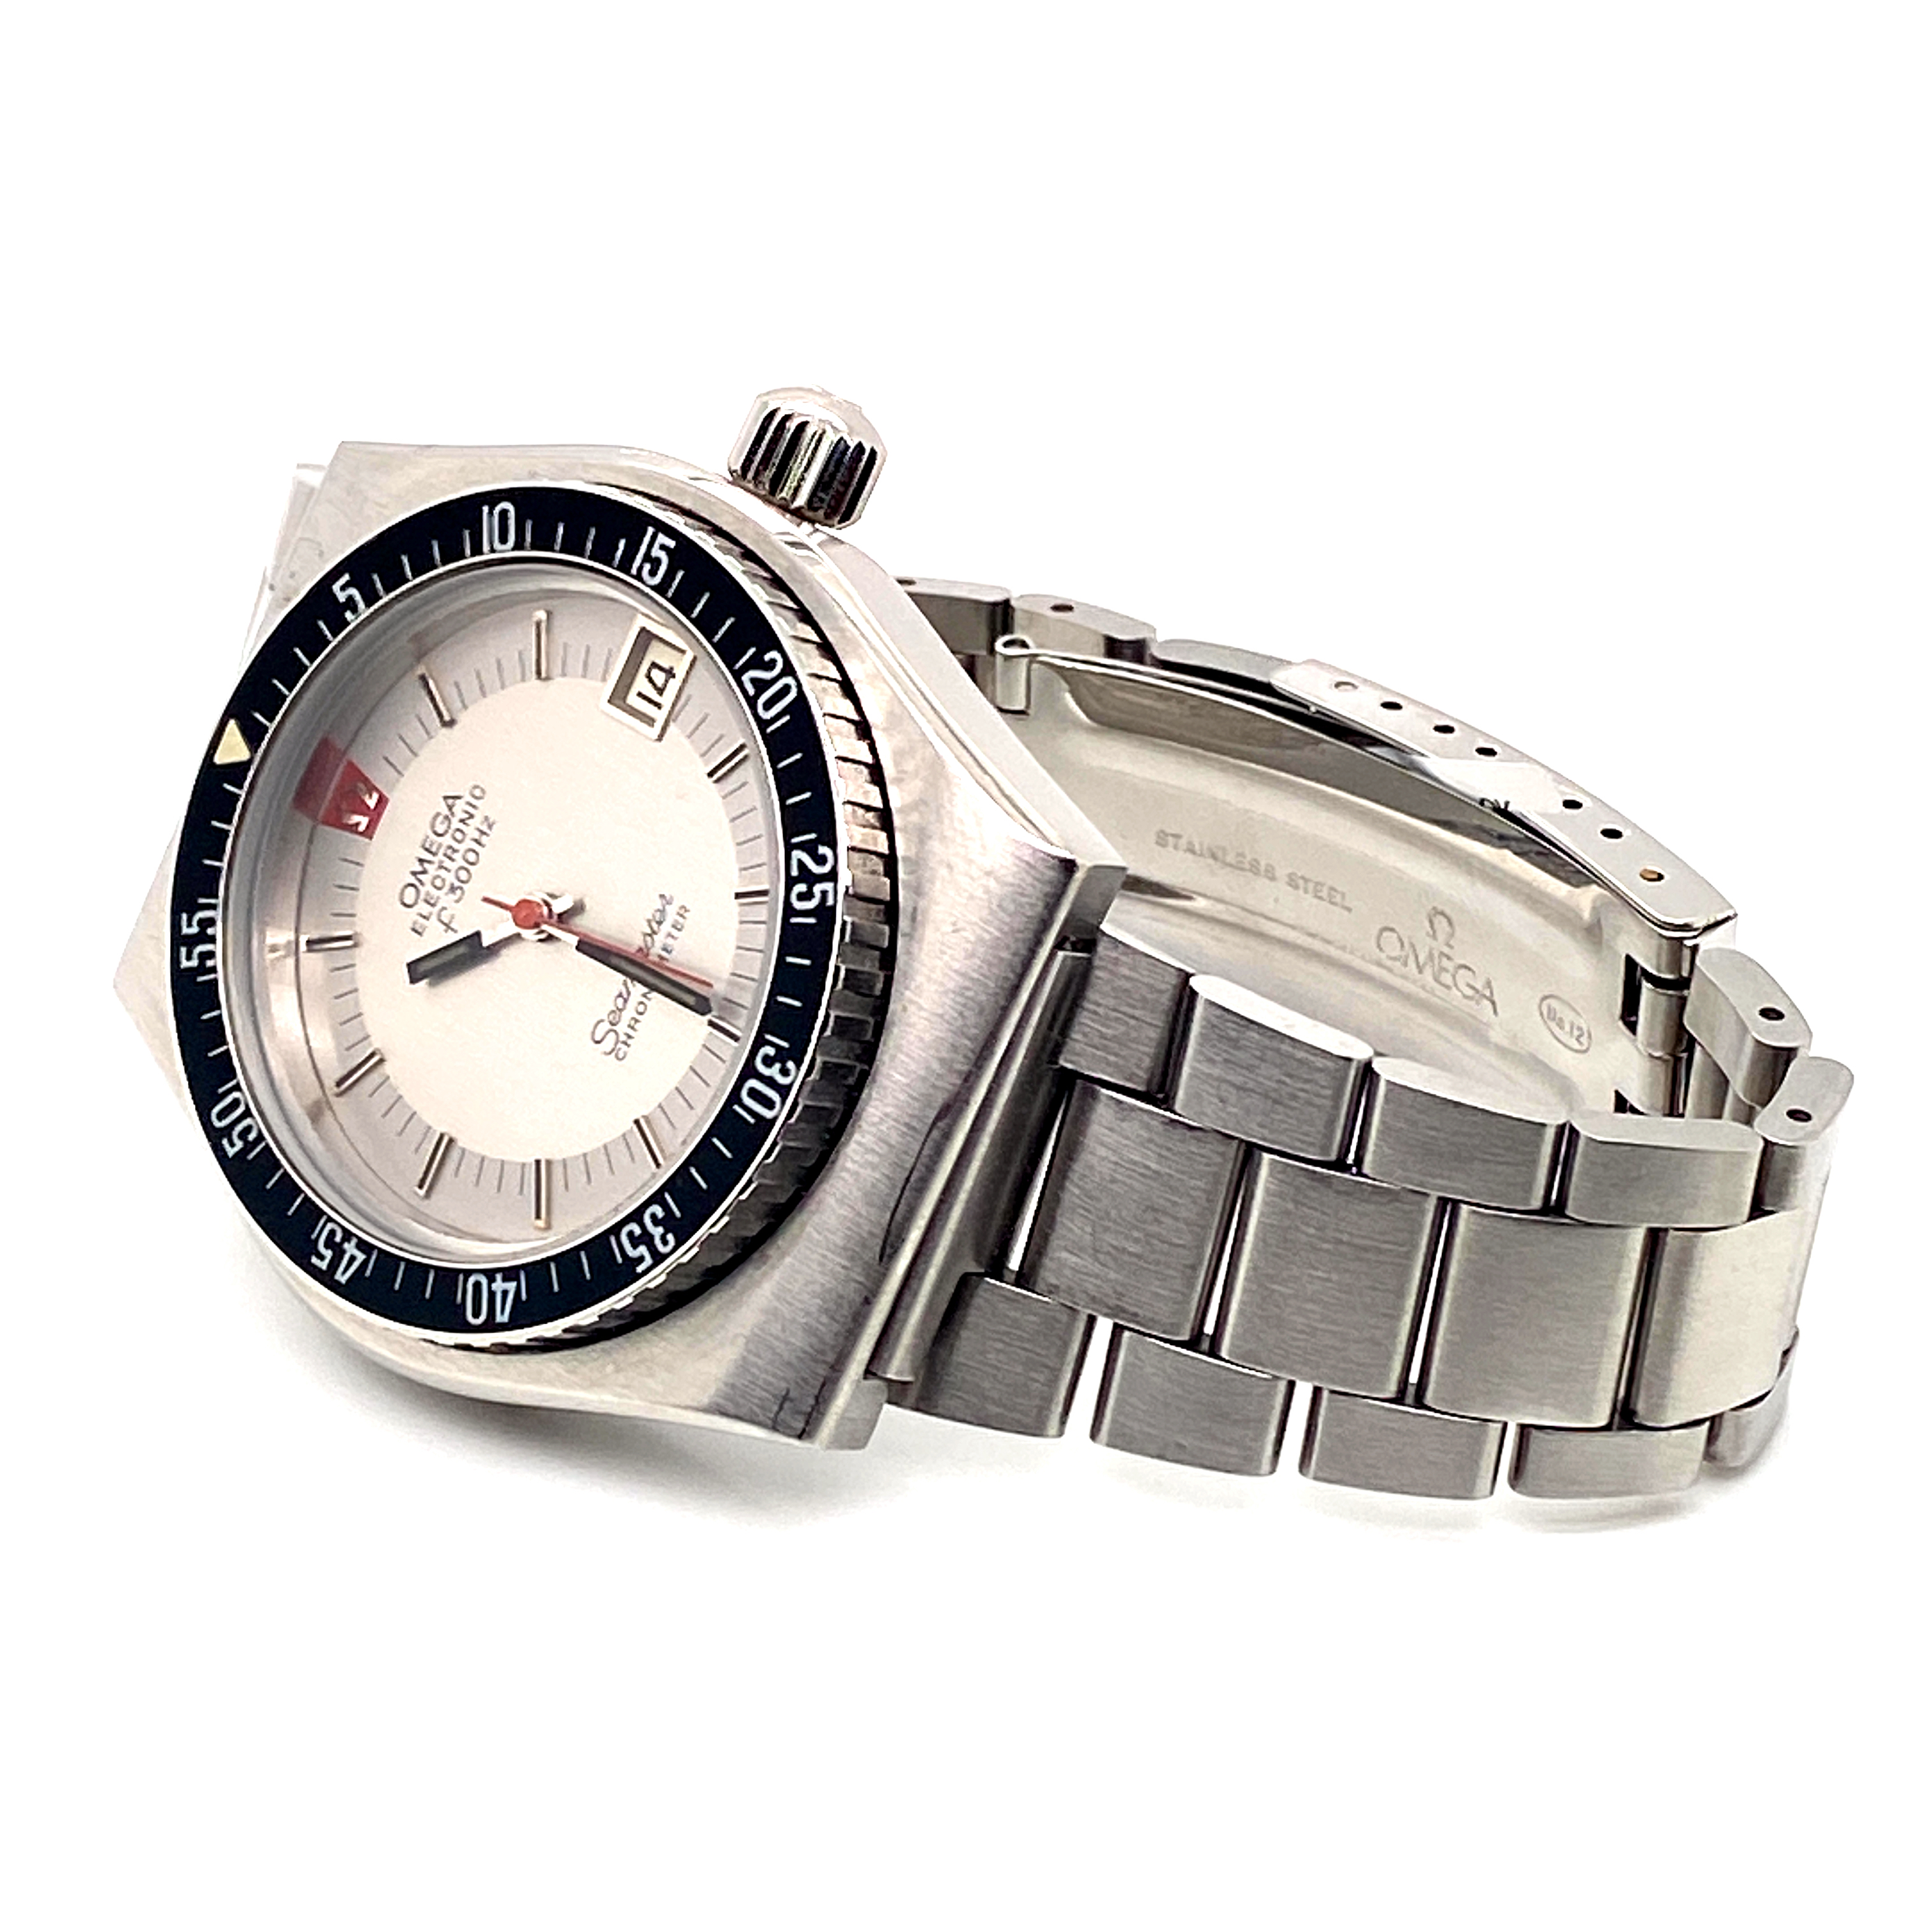 Omega Seamaster Chronometer f300Hz Electronic - Image 7 of 7